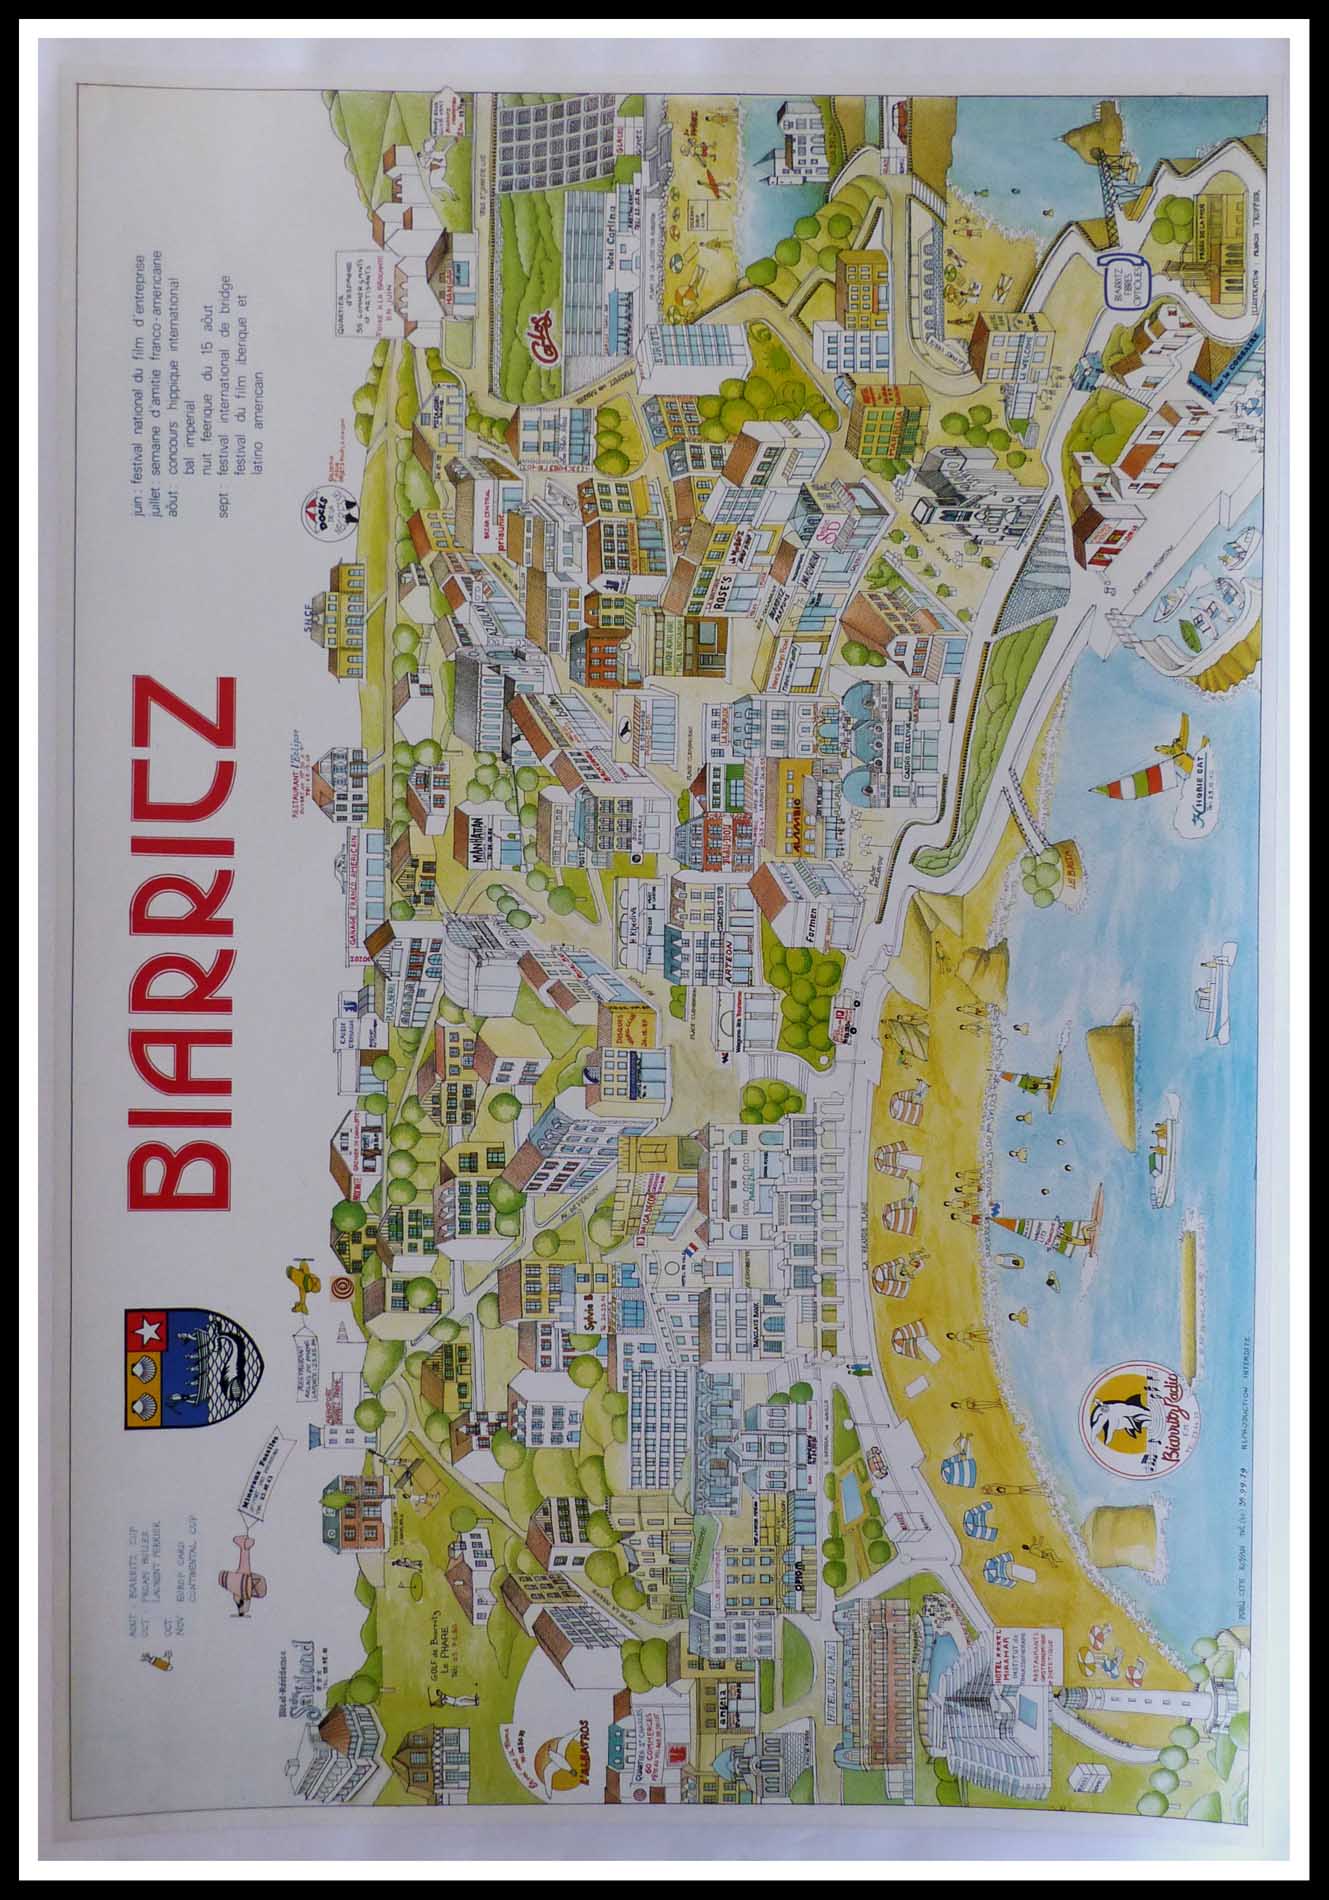 (alt="original vintage travel poster, Biarritz, Frances Truffier, 1992, printed by Pub. Cité Royan")